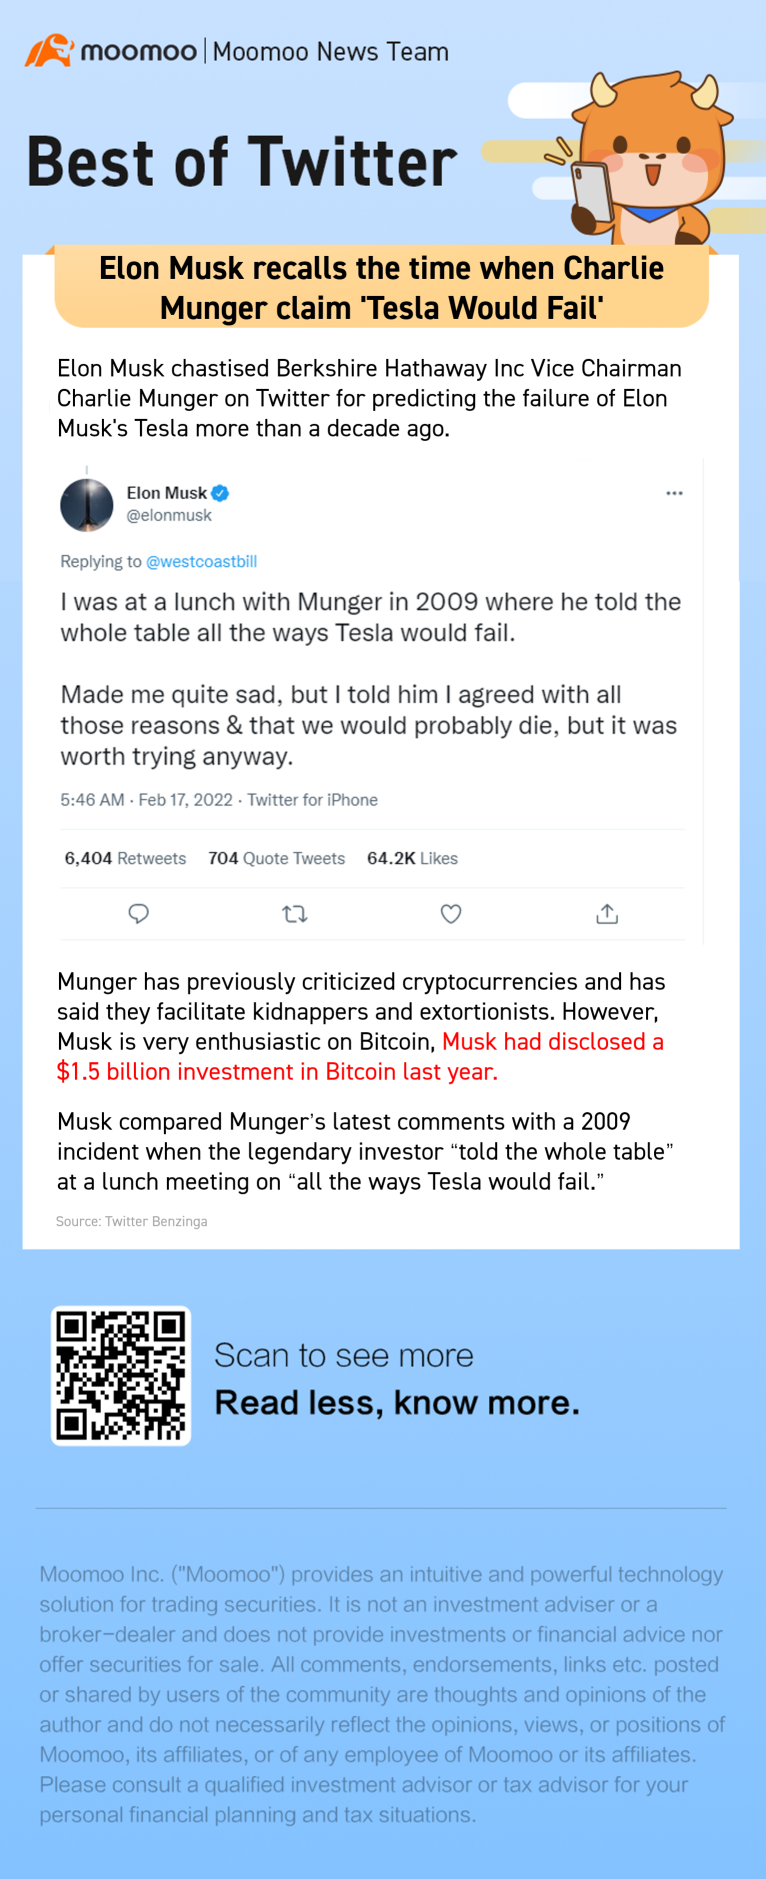 埃隆·马斯克(Elon Musk)回忆起查理·芒格(Charlie Munger)声称“特斯拉会失败”的时候。